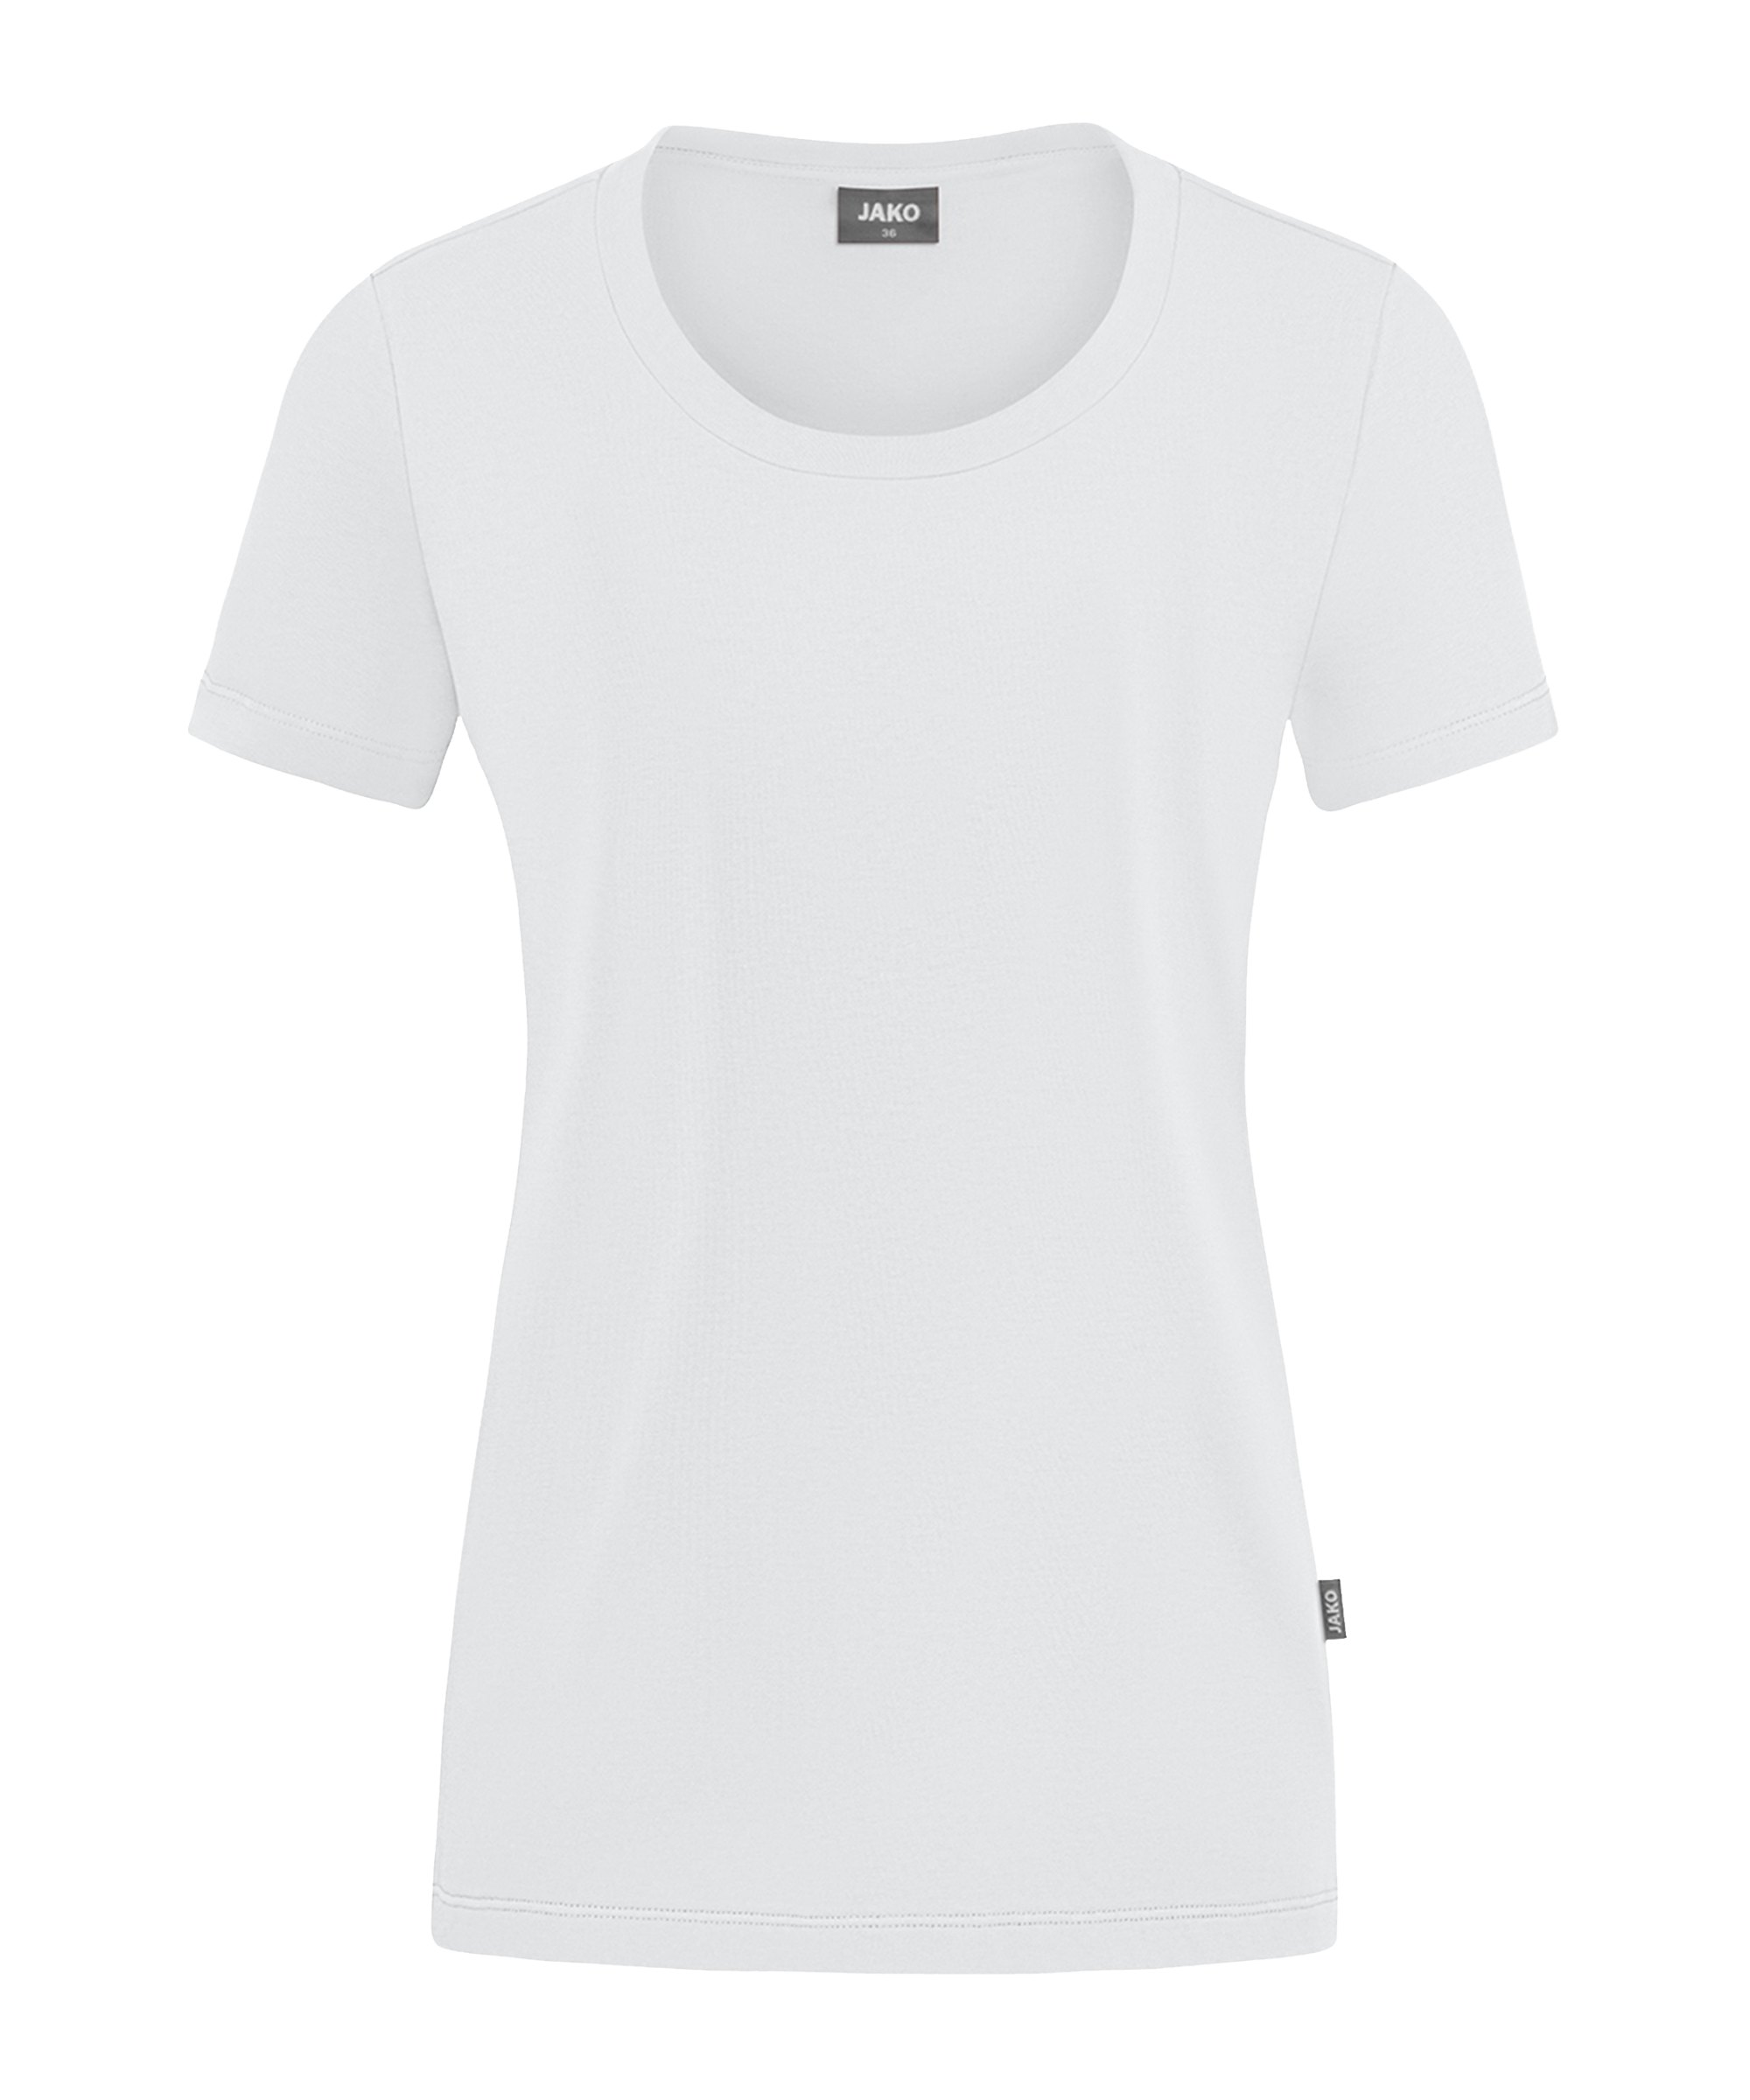 JAKO Organic Stretch T-Shirt Damen Weiss F000 - weiss